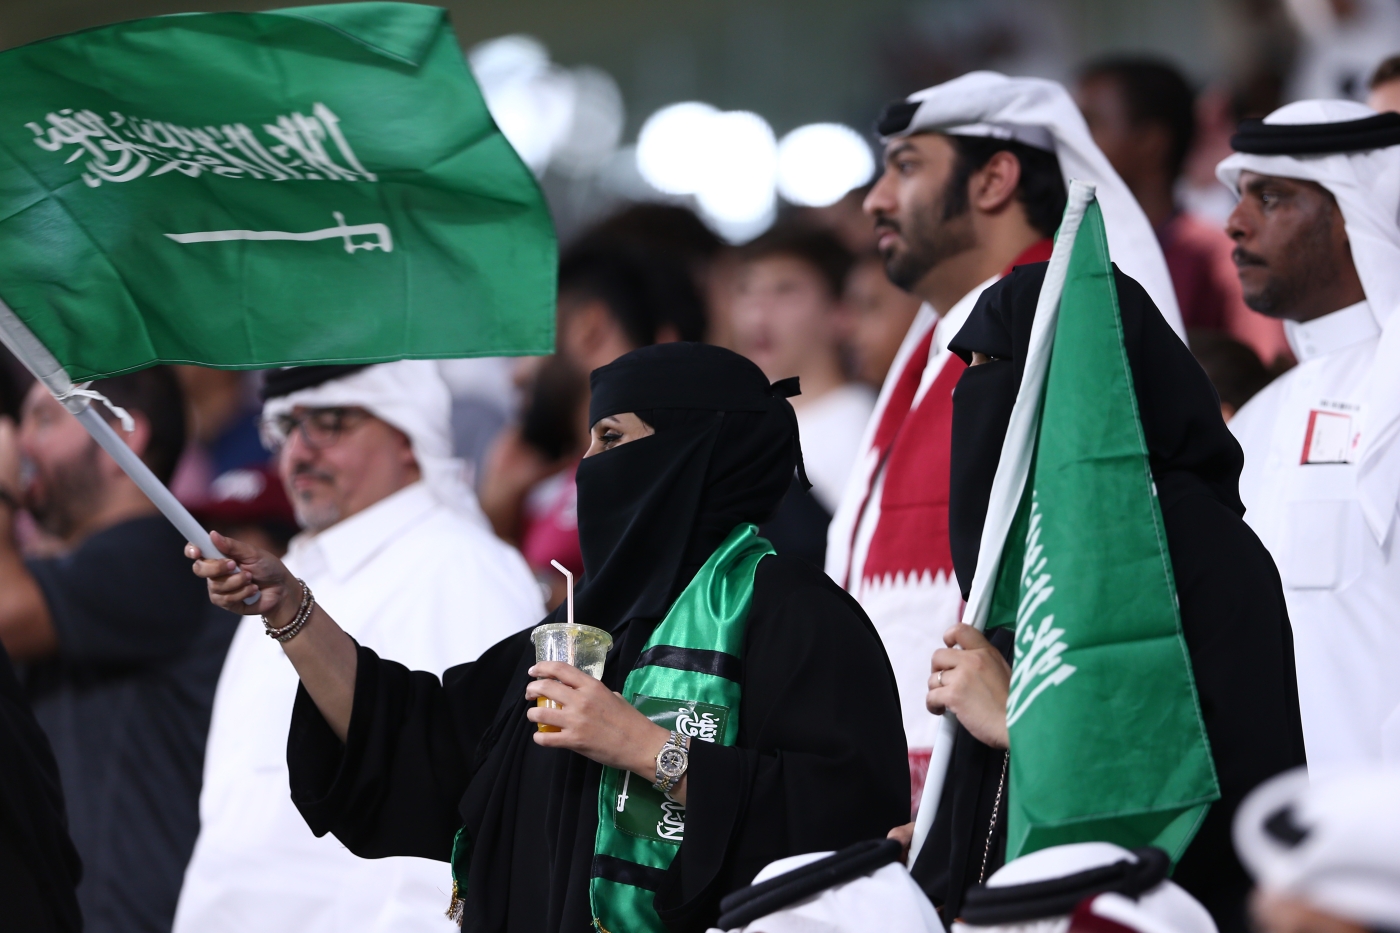 Des supporters agitent des drapeaux lors d’un match de football entre le Qatar et l’Arabie saoudite, en décembre 2019 (AFP)